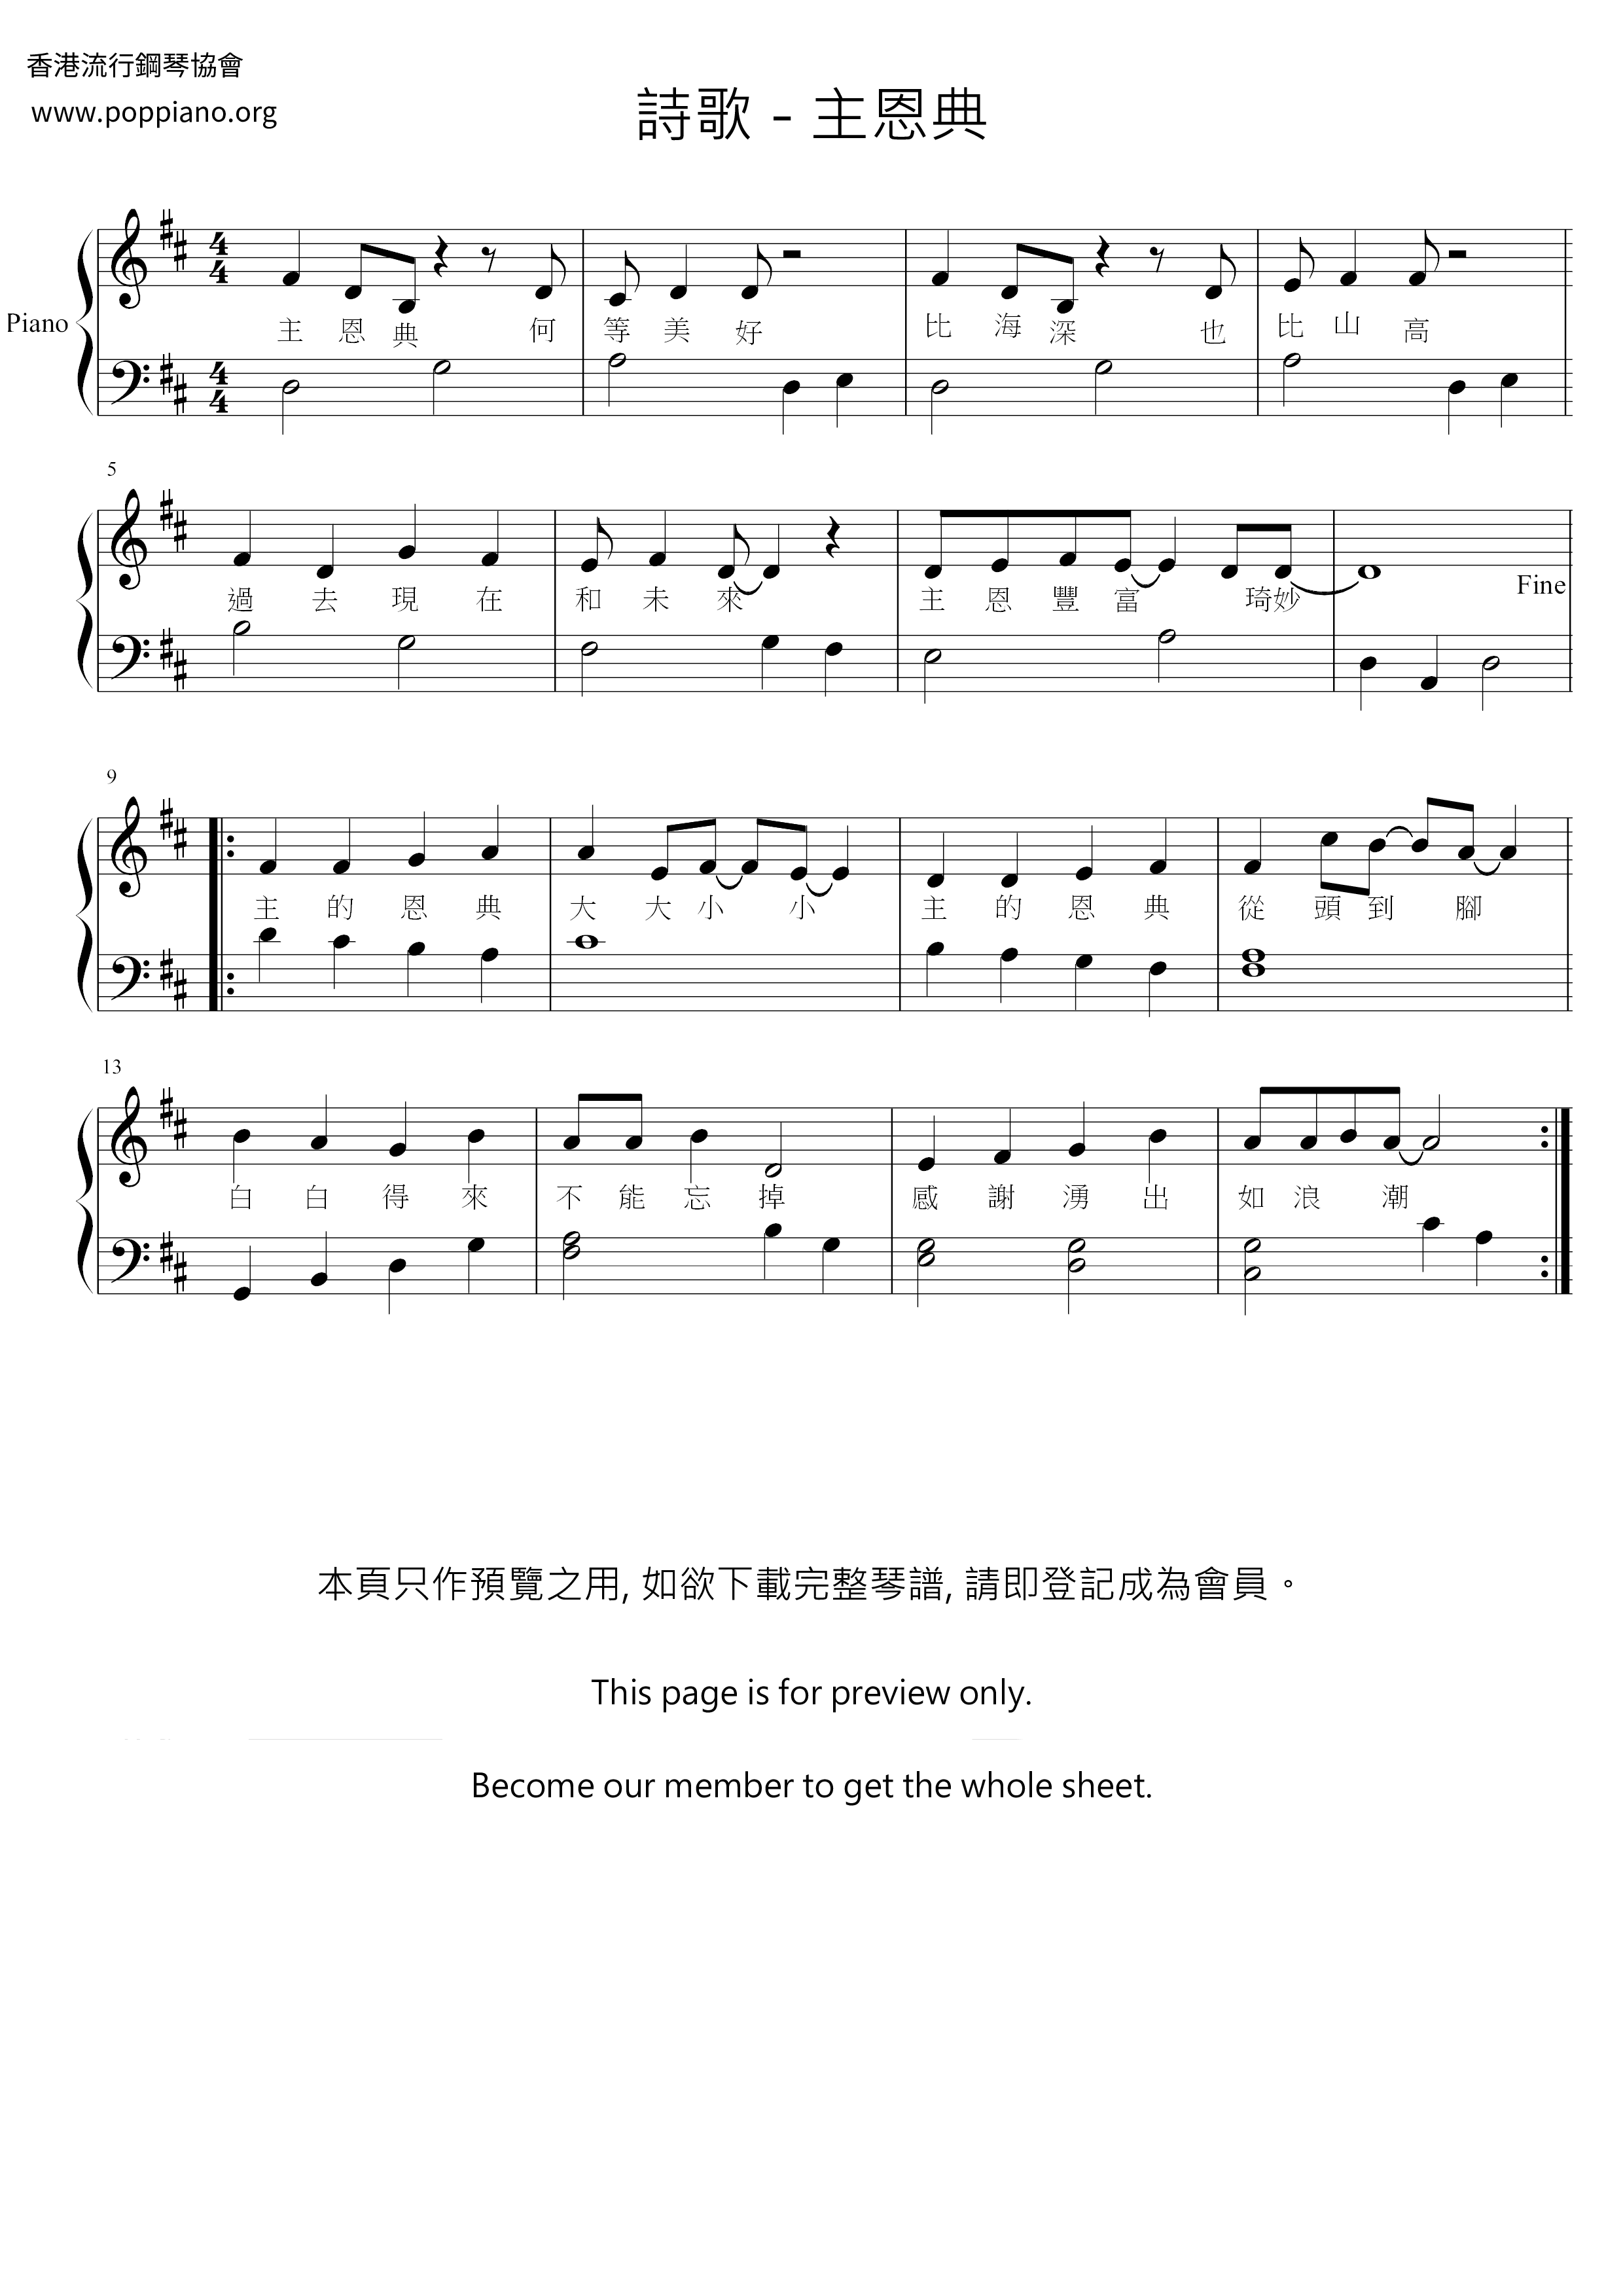 Lord's Grace Score